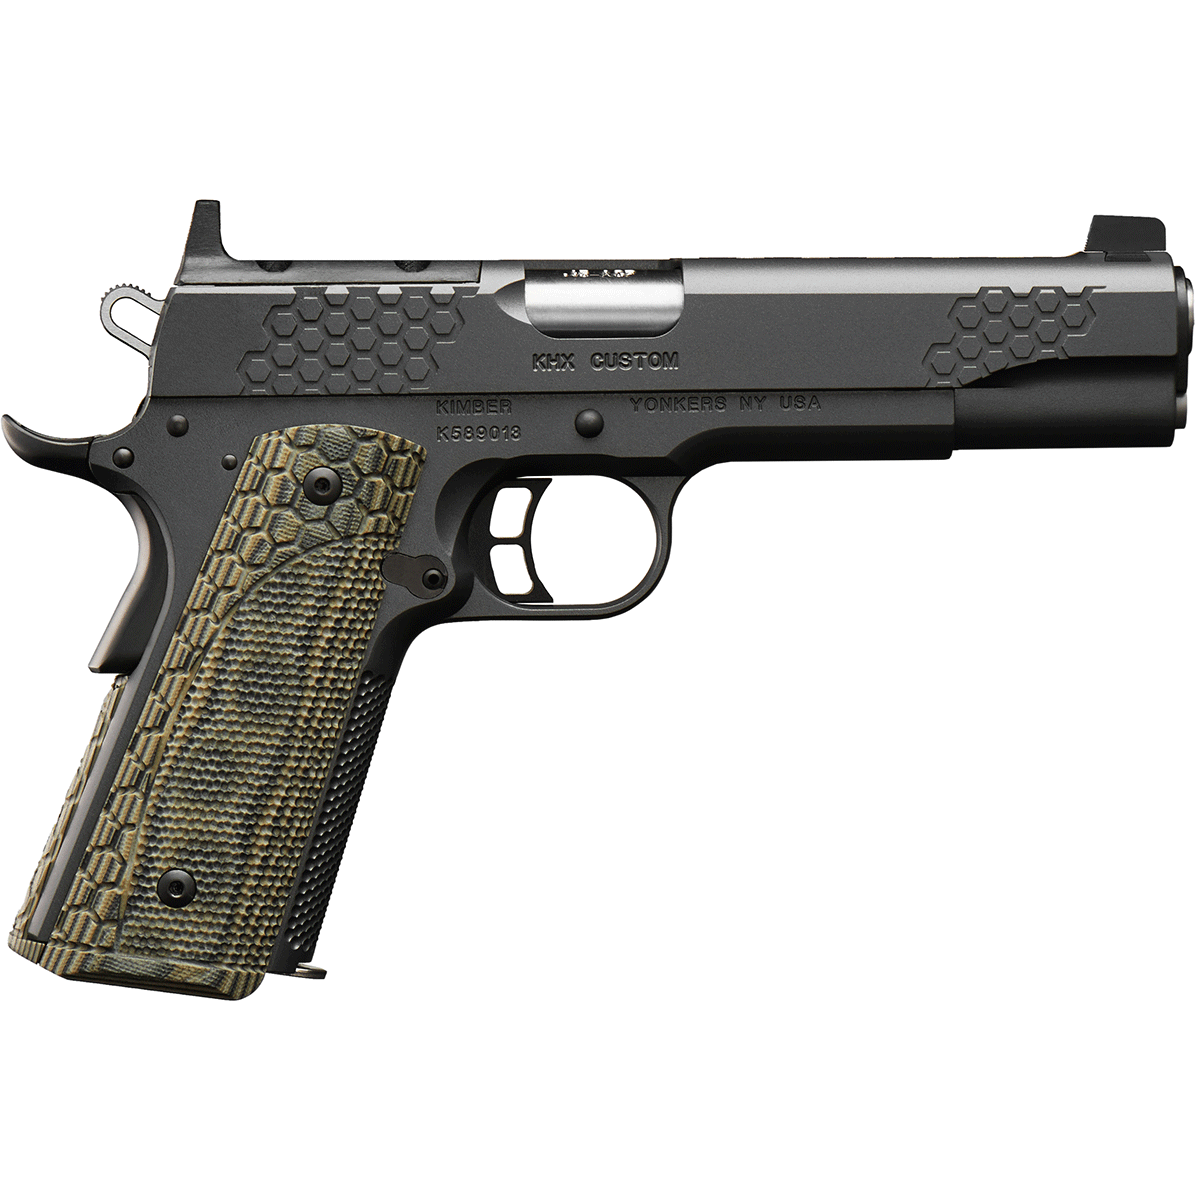 Kimber KHX (OR) Custom Pistol - 45 ACP, 5 in Barrel, Stainless Steel Frame, Steel Slide, 8 Rd